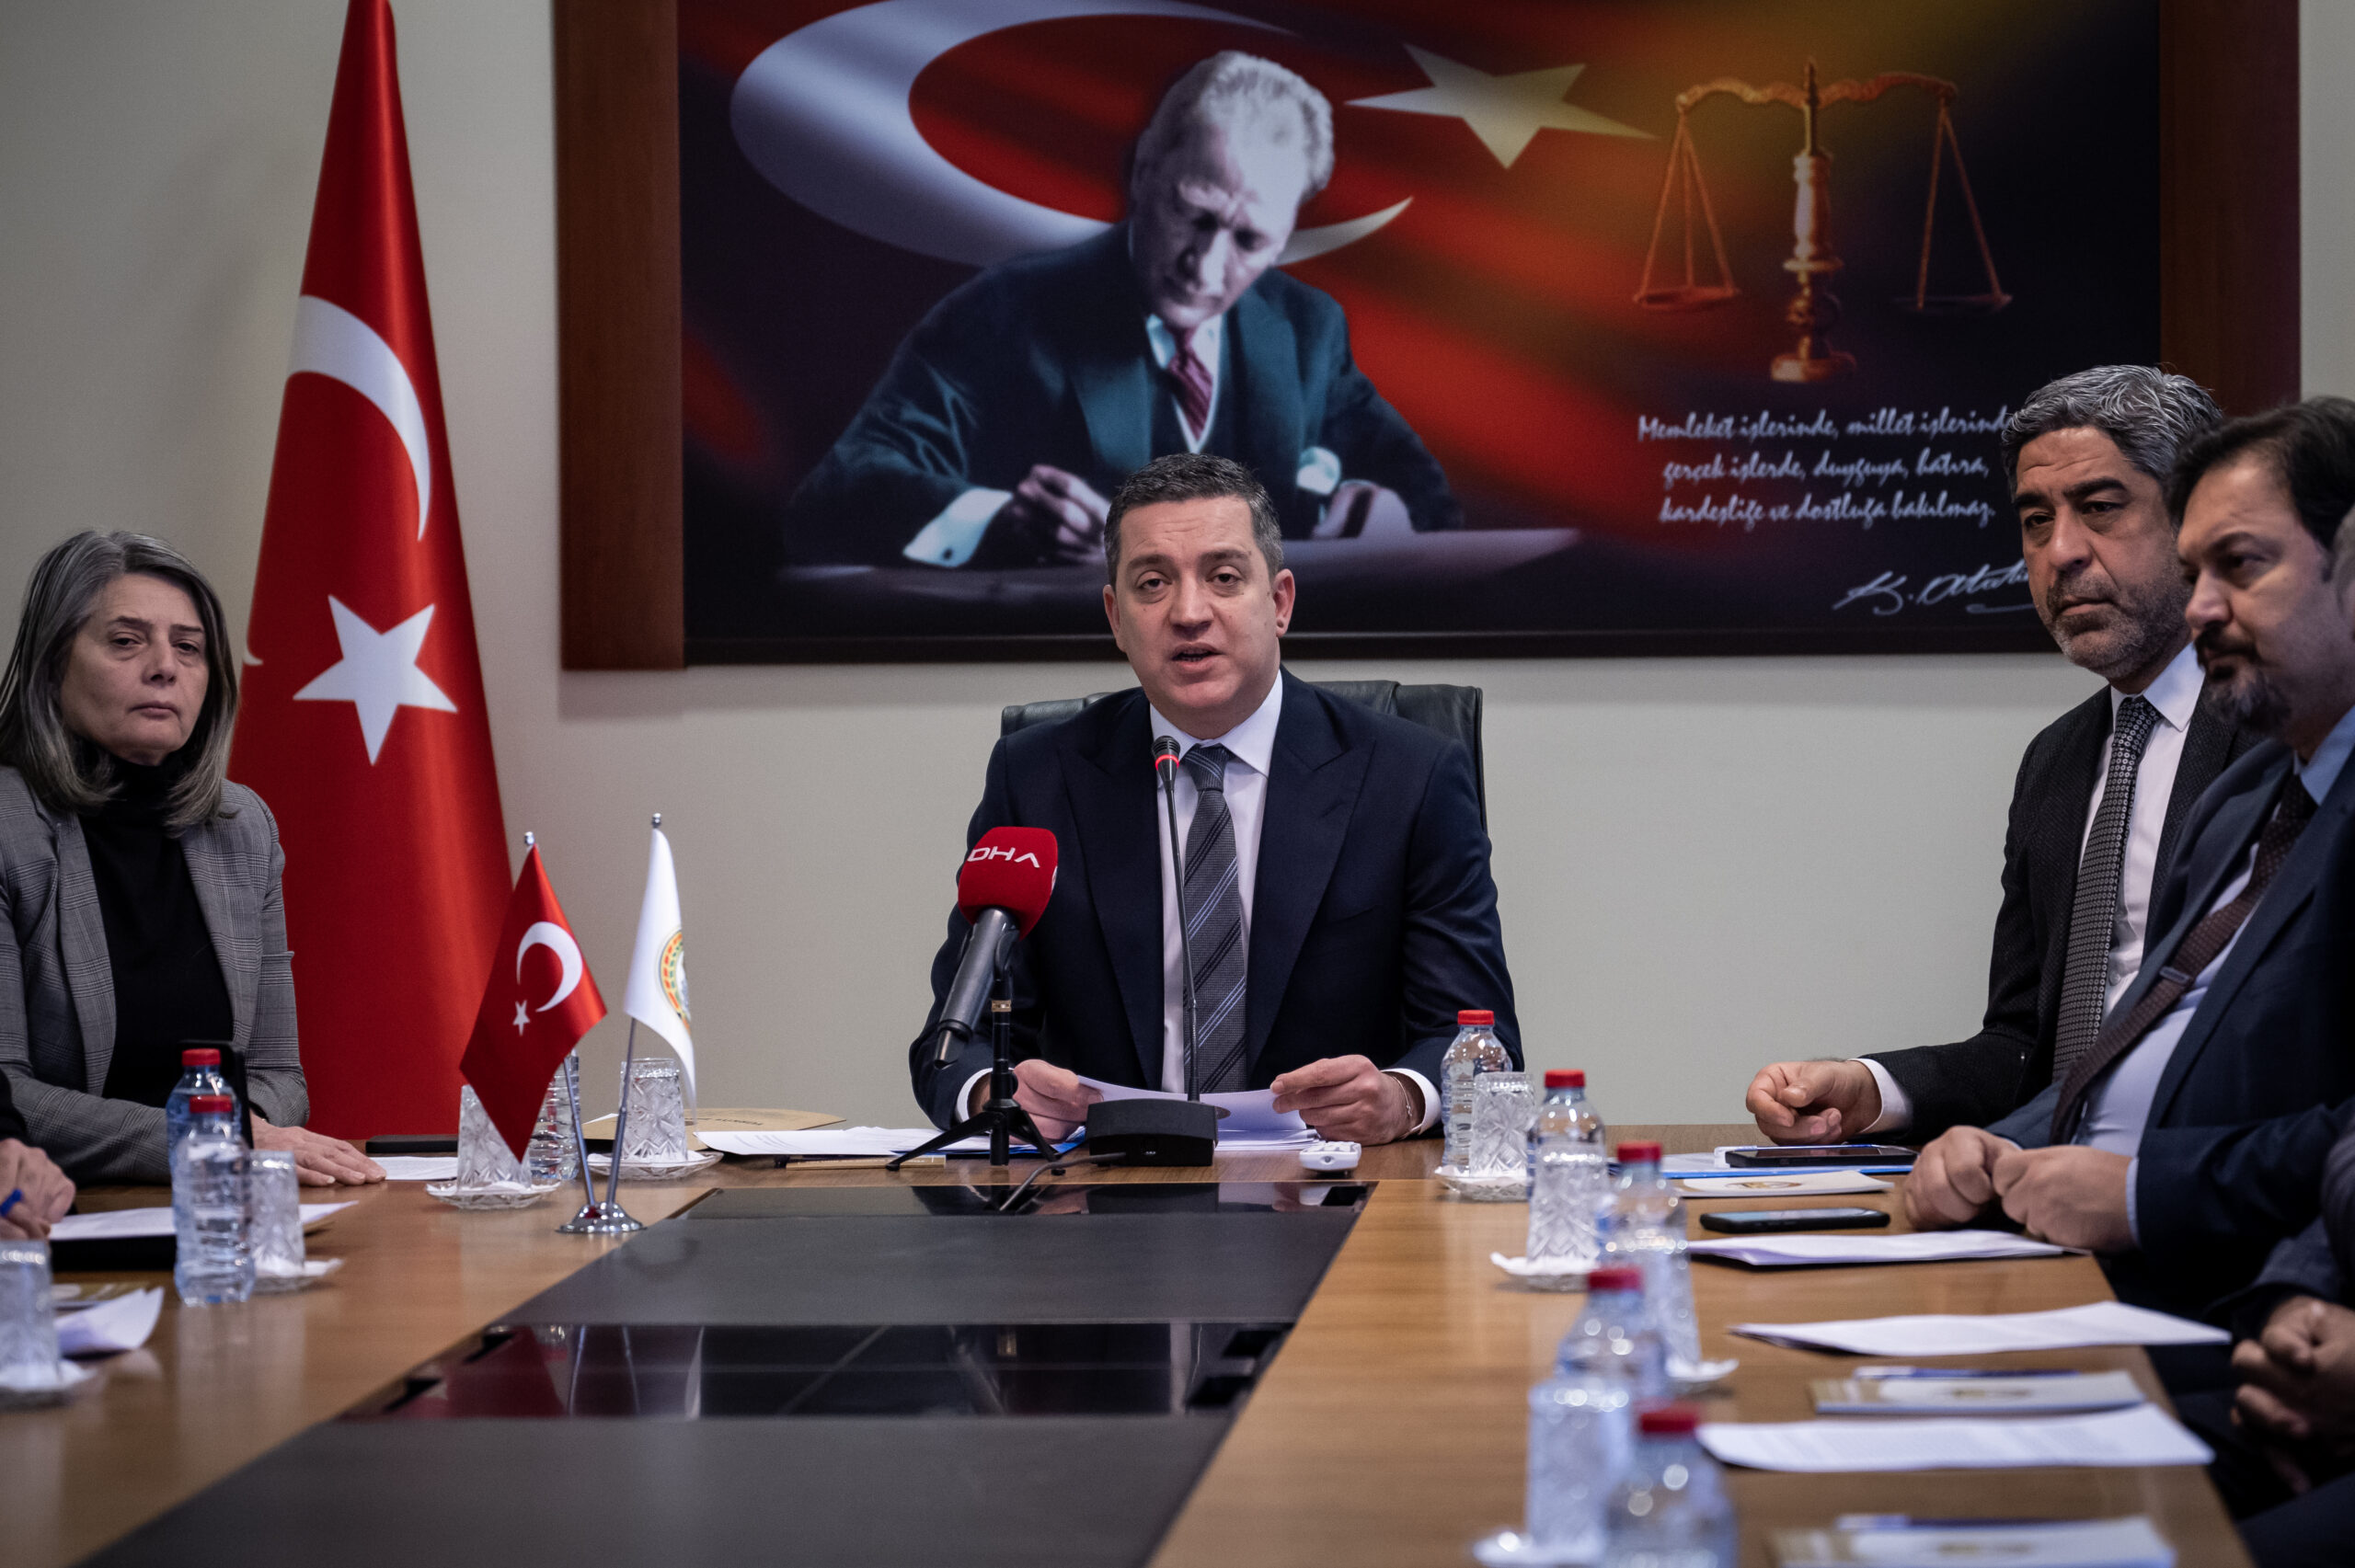 Milletin acılı gününde seçim derdine düşen TBB Başkanı Sağkan’a tepki